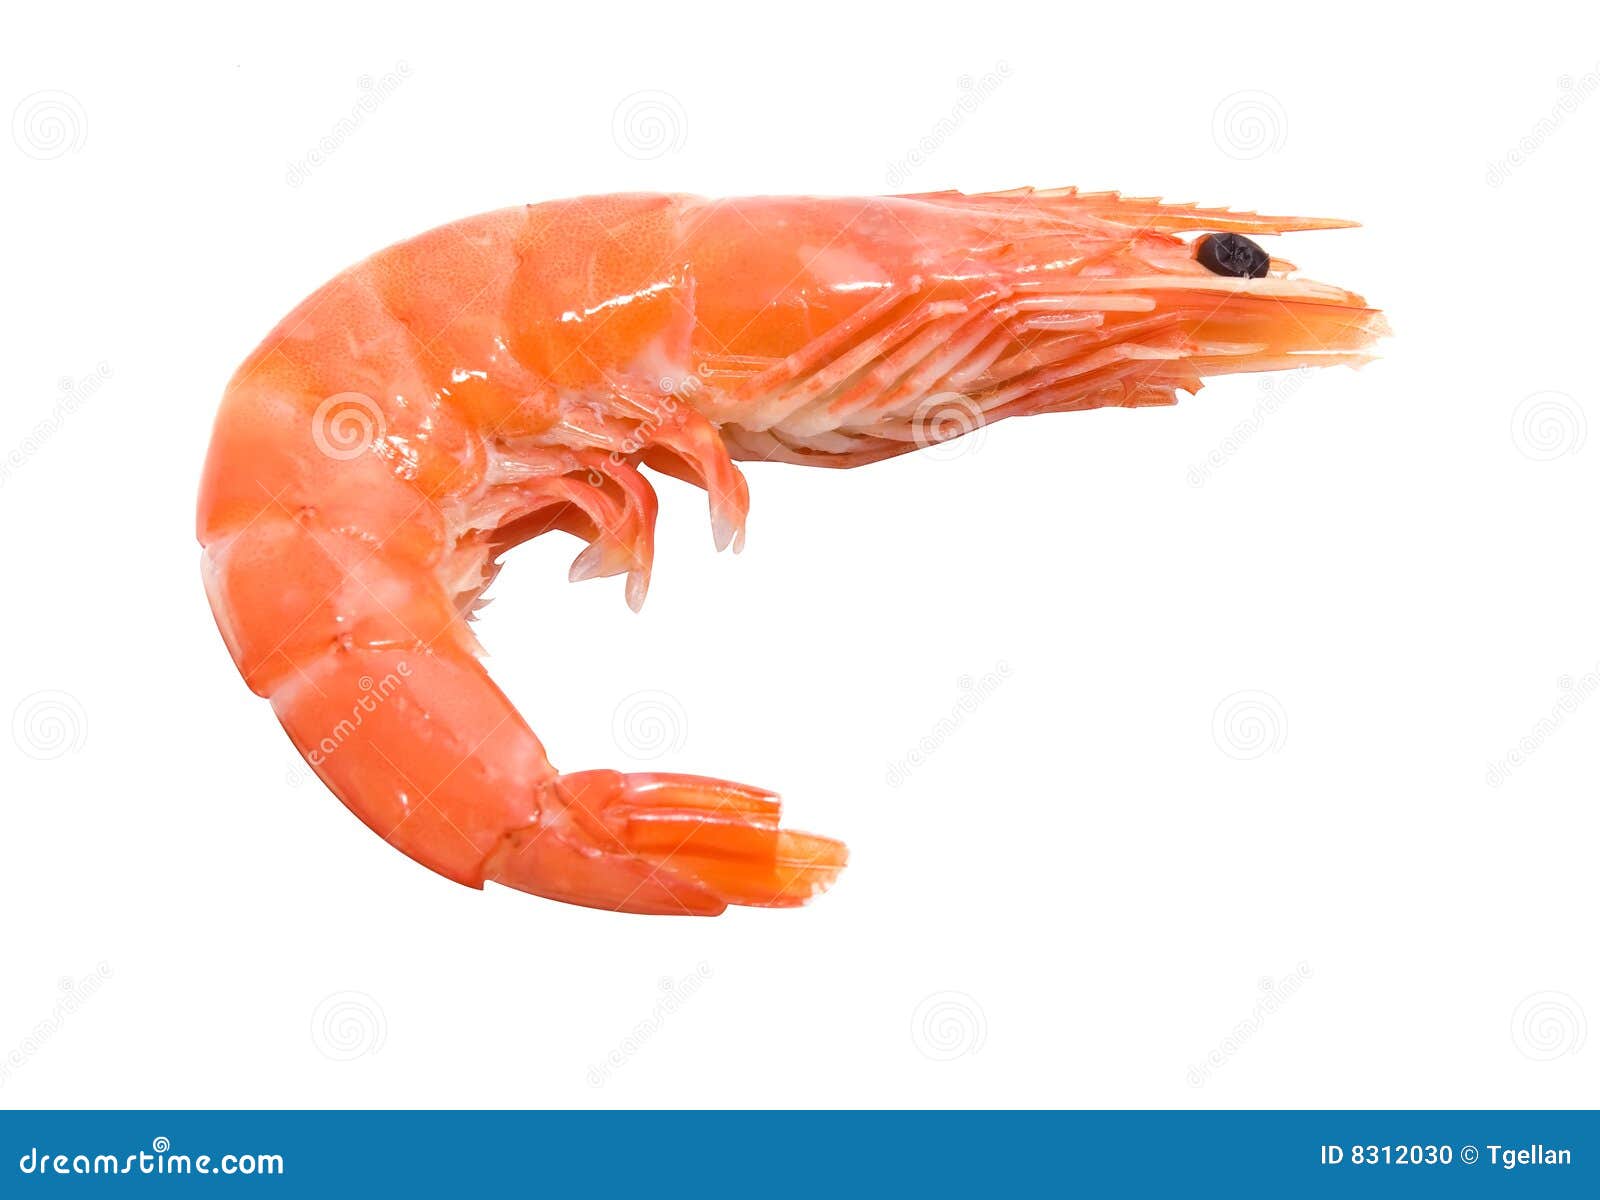 Big Shrimp Stock Photo - Image: 8312030